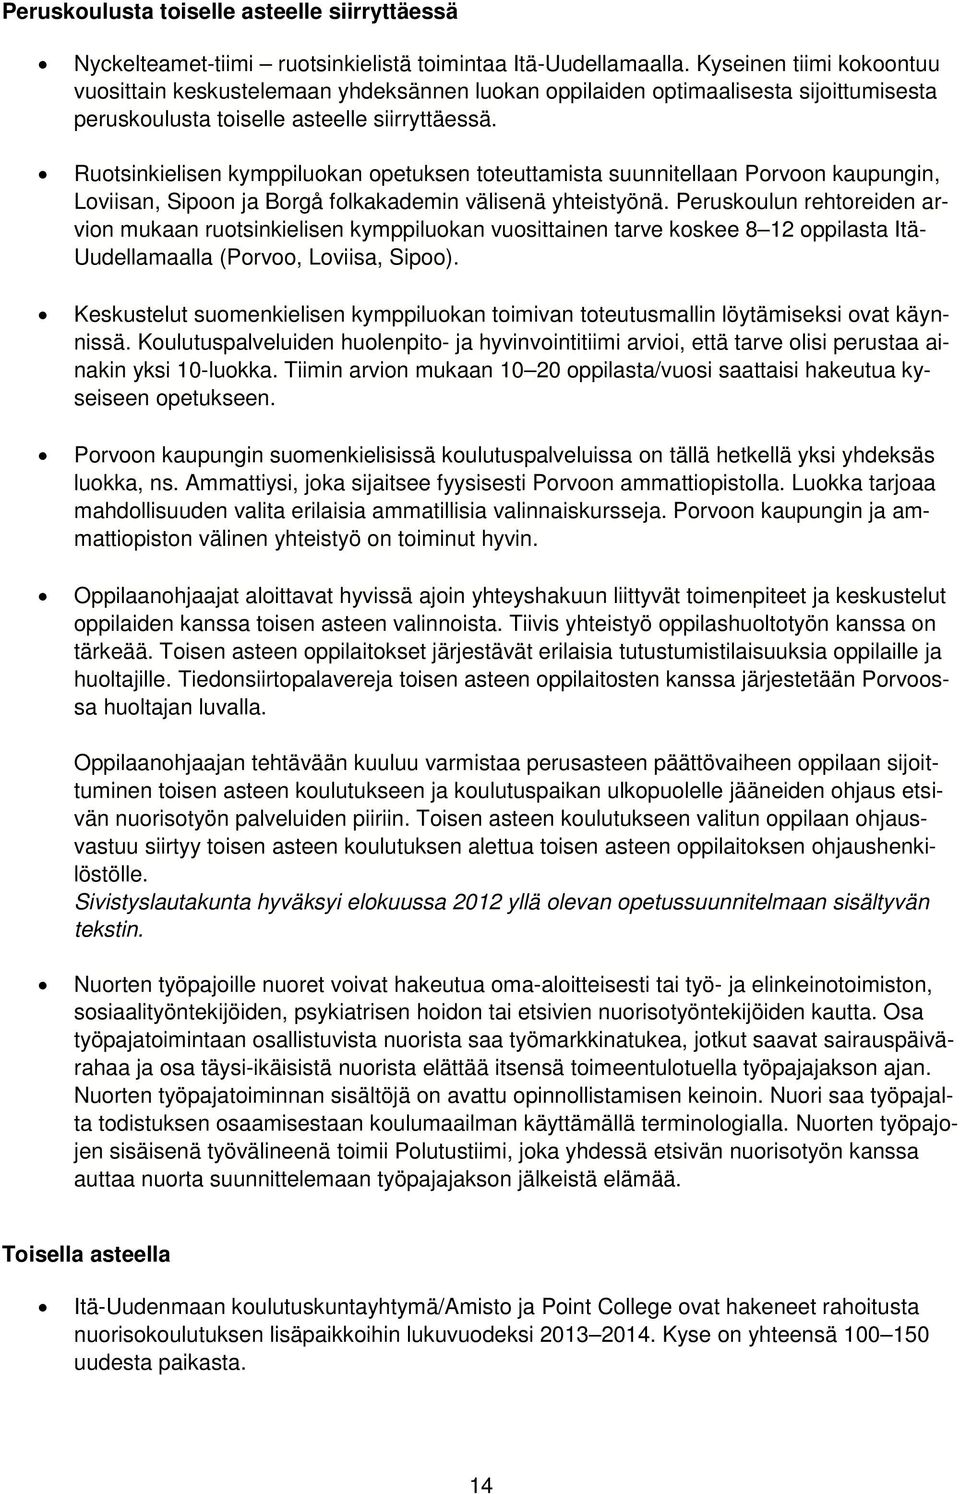 Ruotsinkielisen kymppiluokan opetuksen toteuttamista suunnitellaan Porvoon kaupungin, Loviisan, Sipoon ja Borgå folkakademin välisenä yhteistyönä.